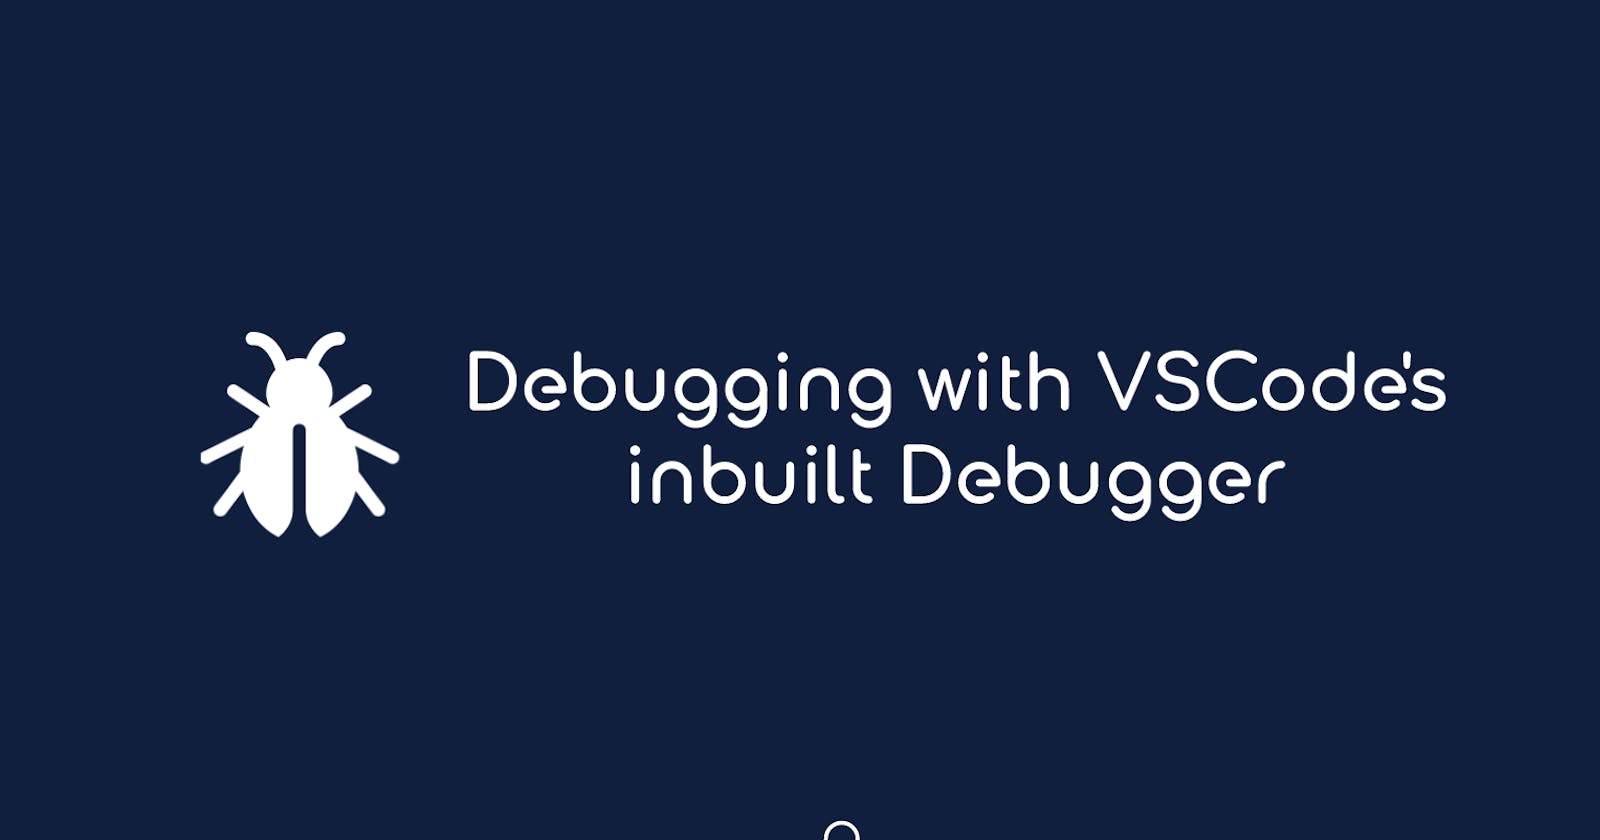 Debugging with VSCode's inbuilt Debugger